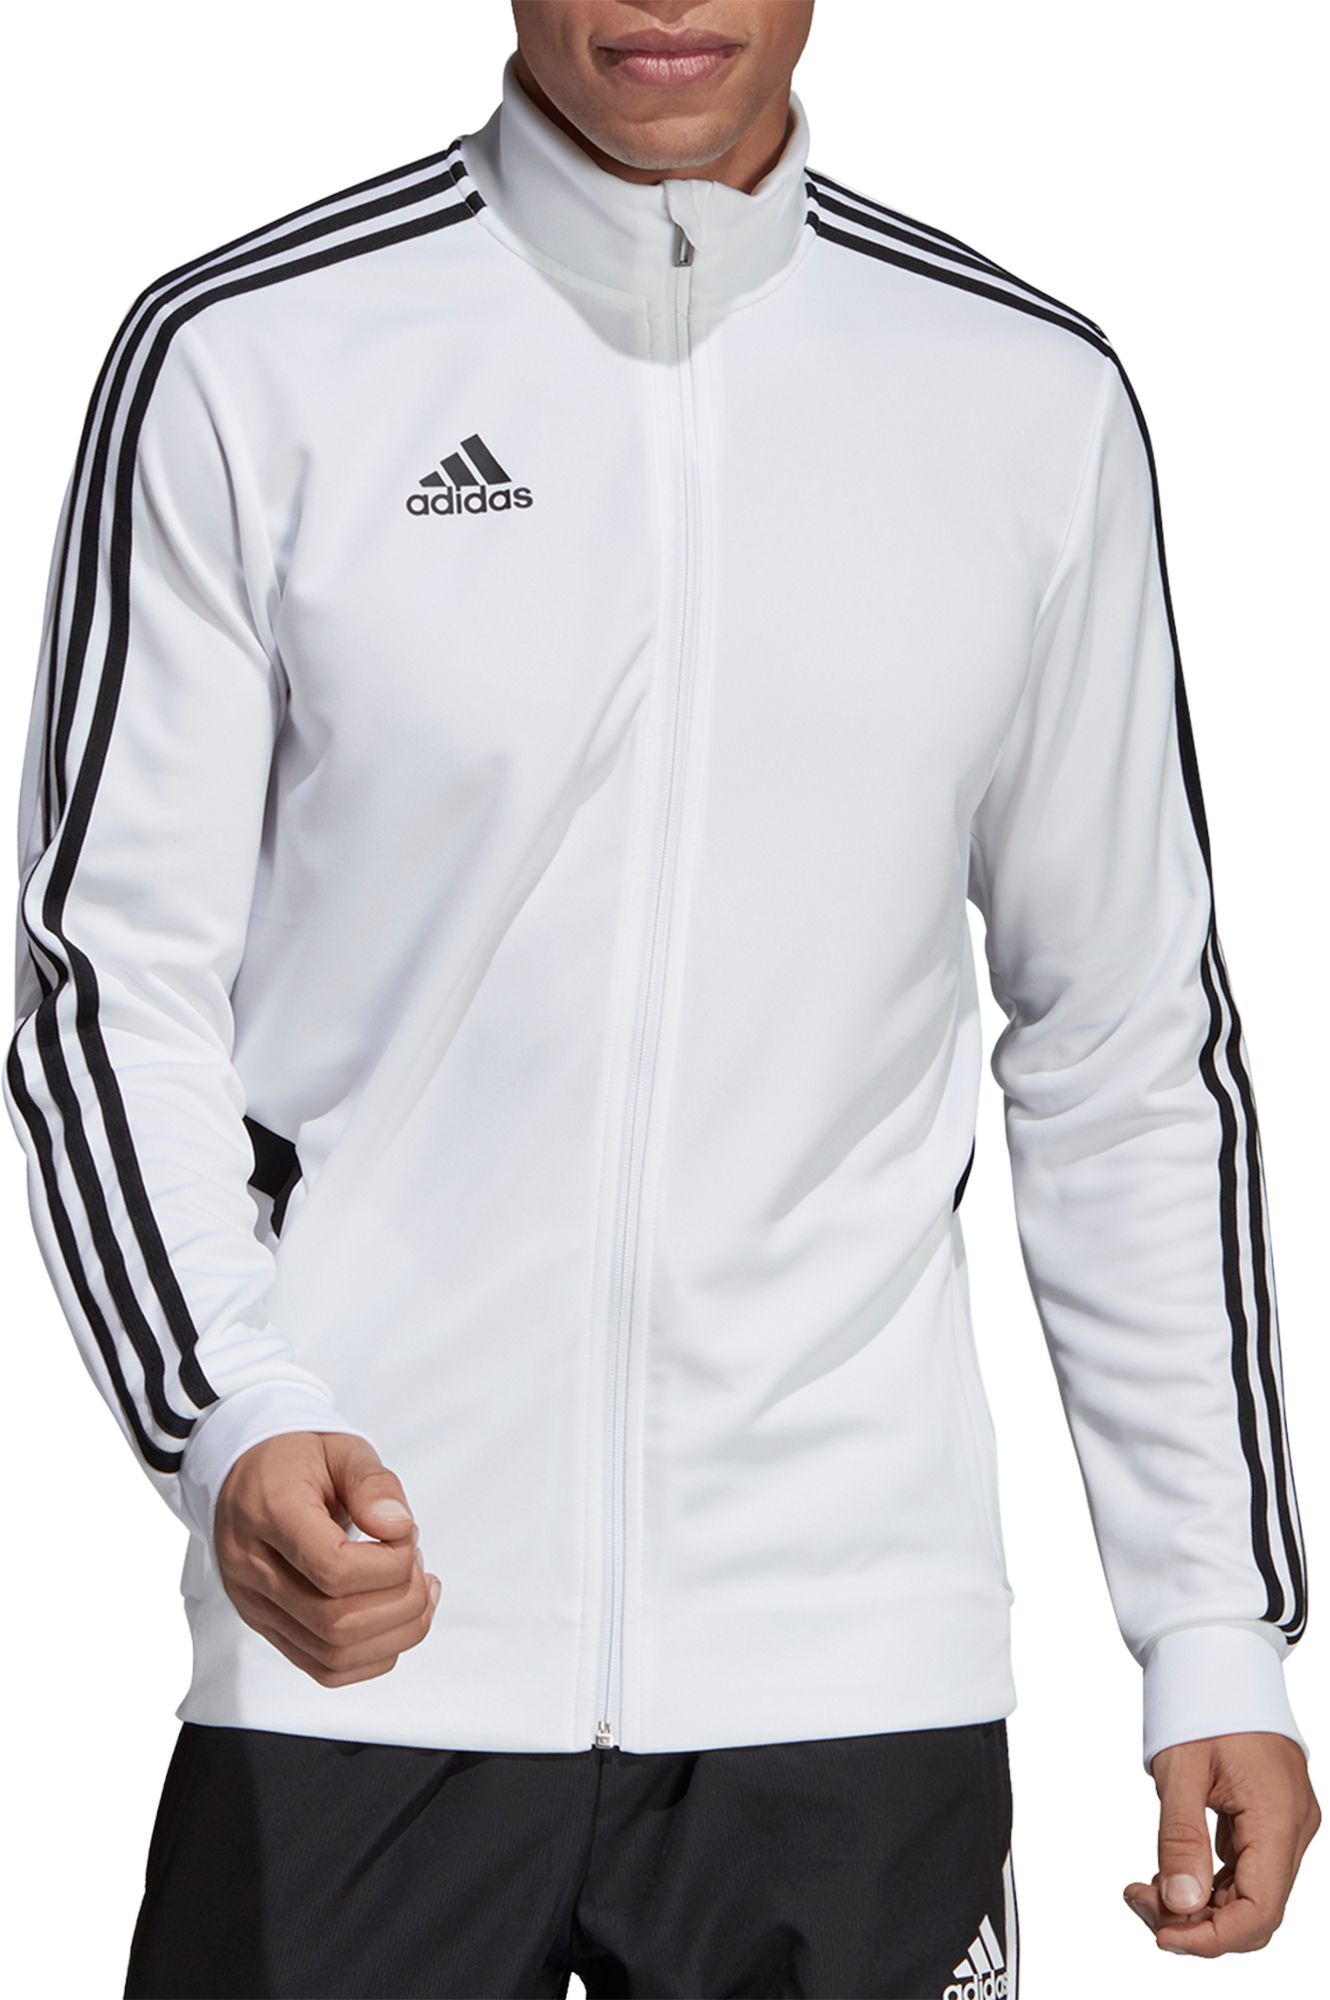 mens white adidas track jacket